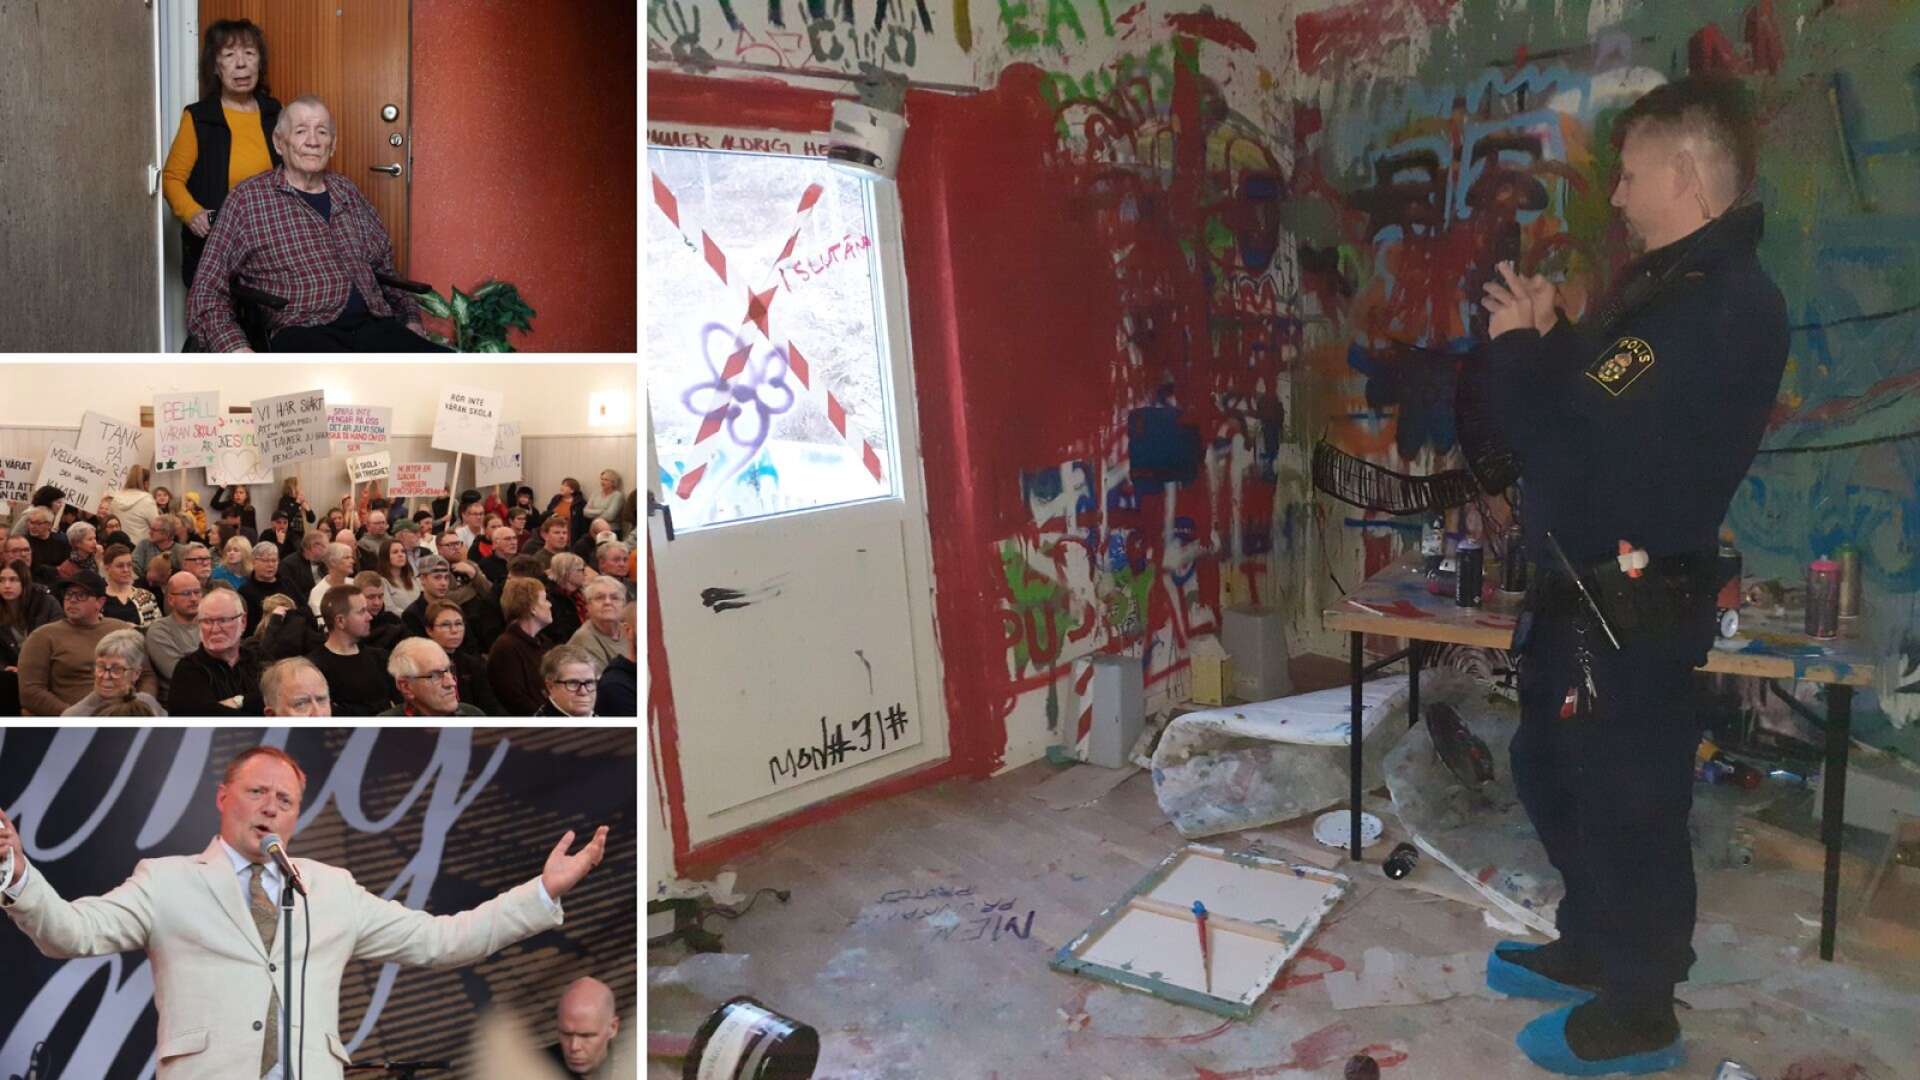 Vandalisering, husrivning och skolprotester – det hinner hända mycket på ett år, både stort och smått